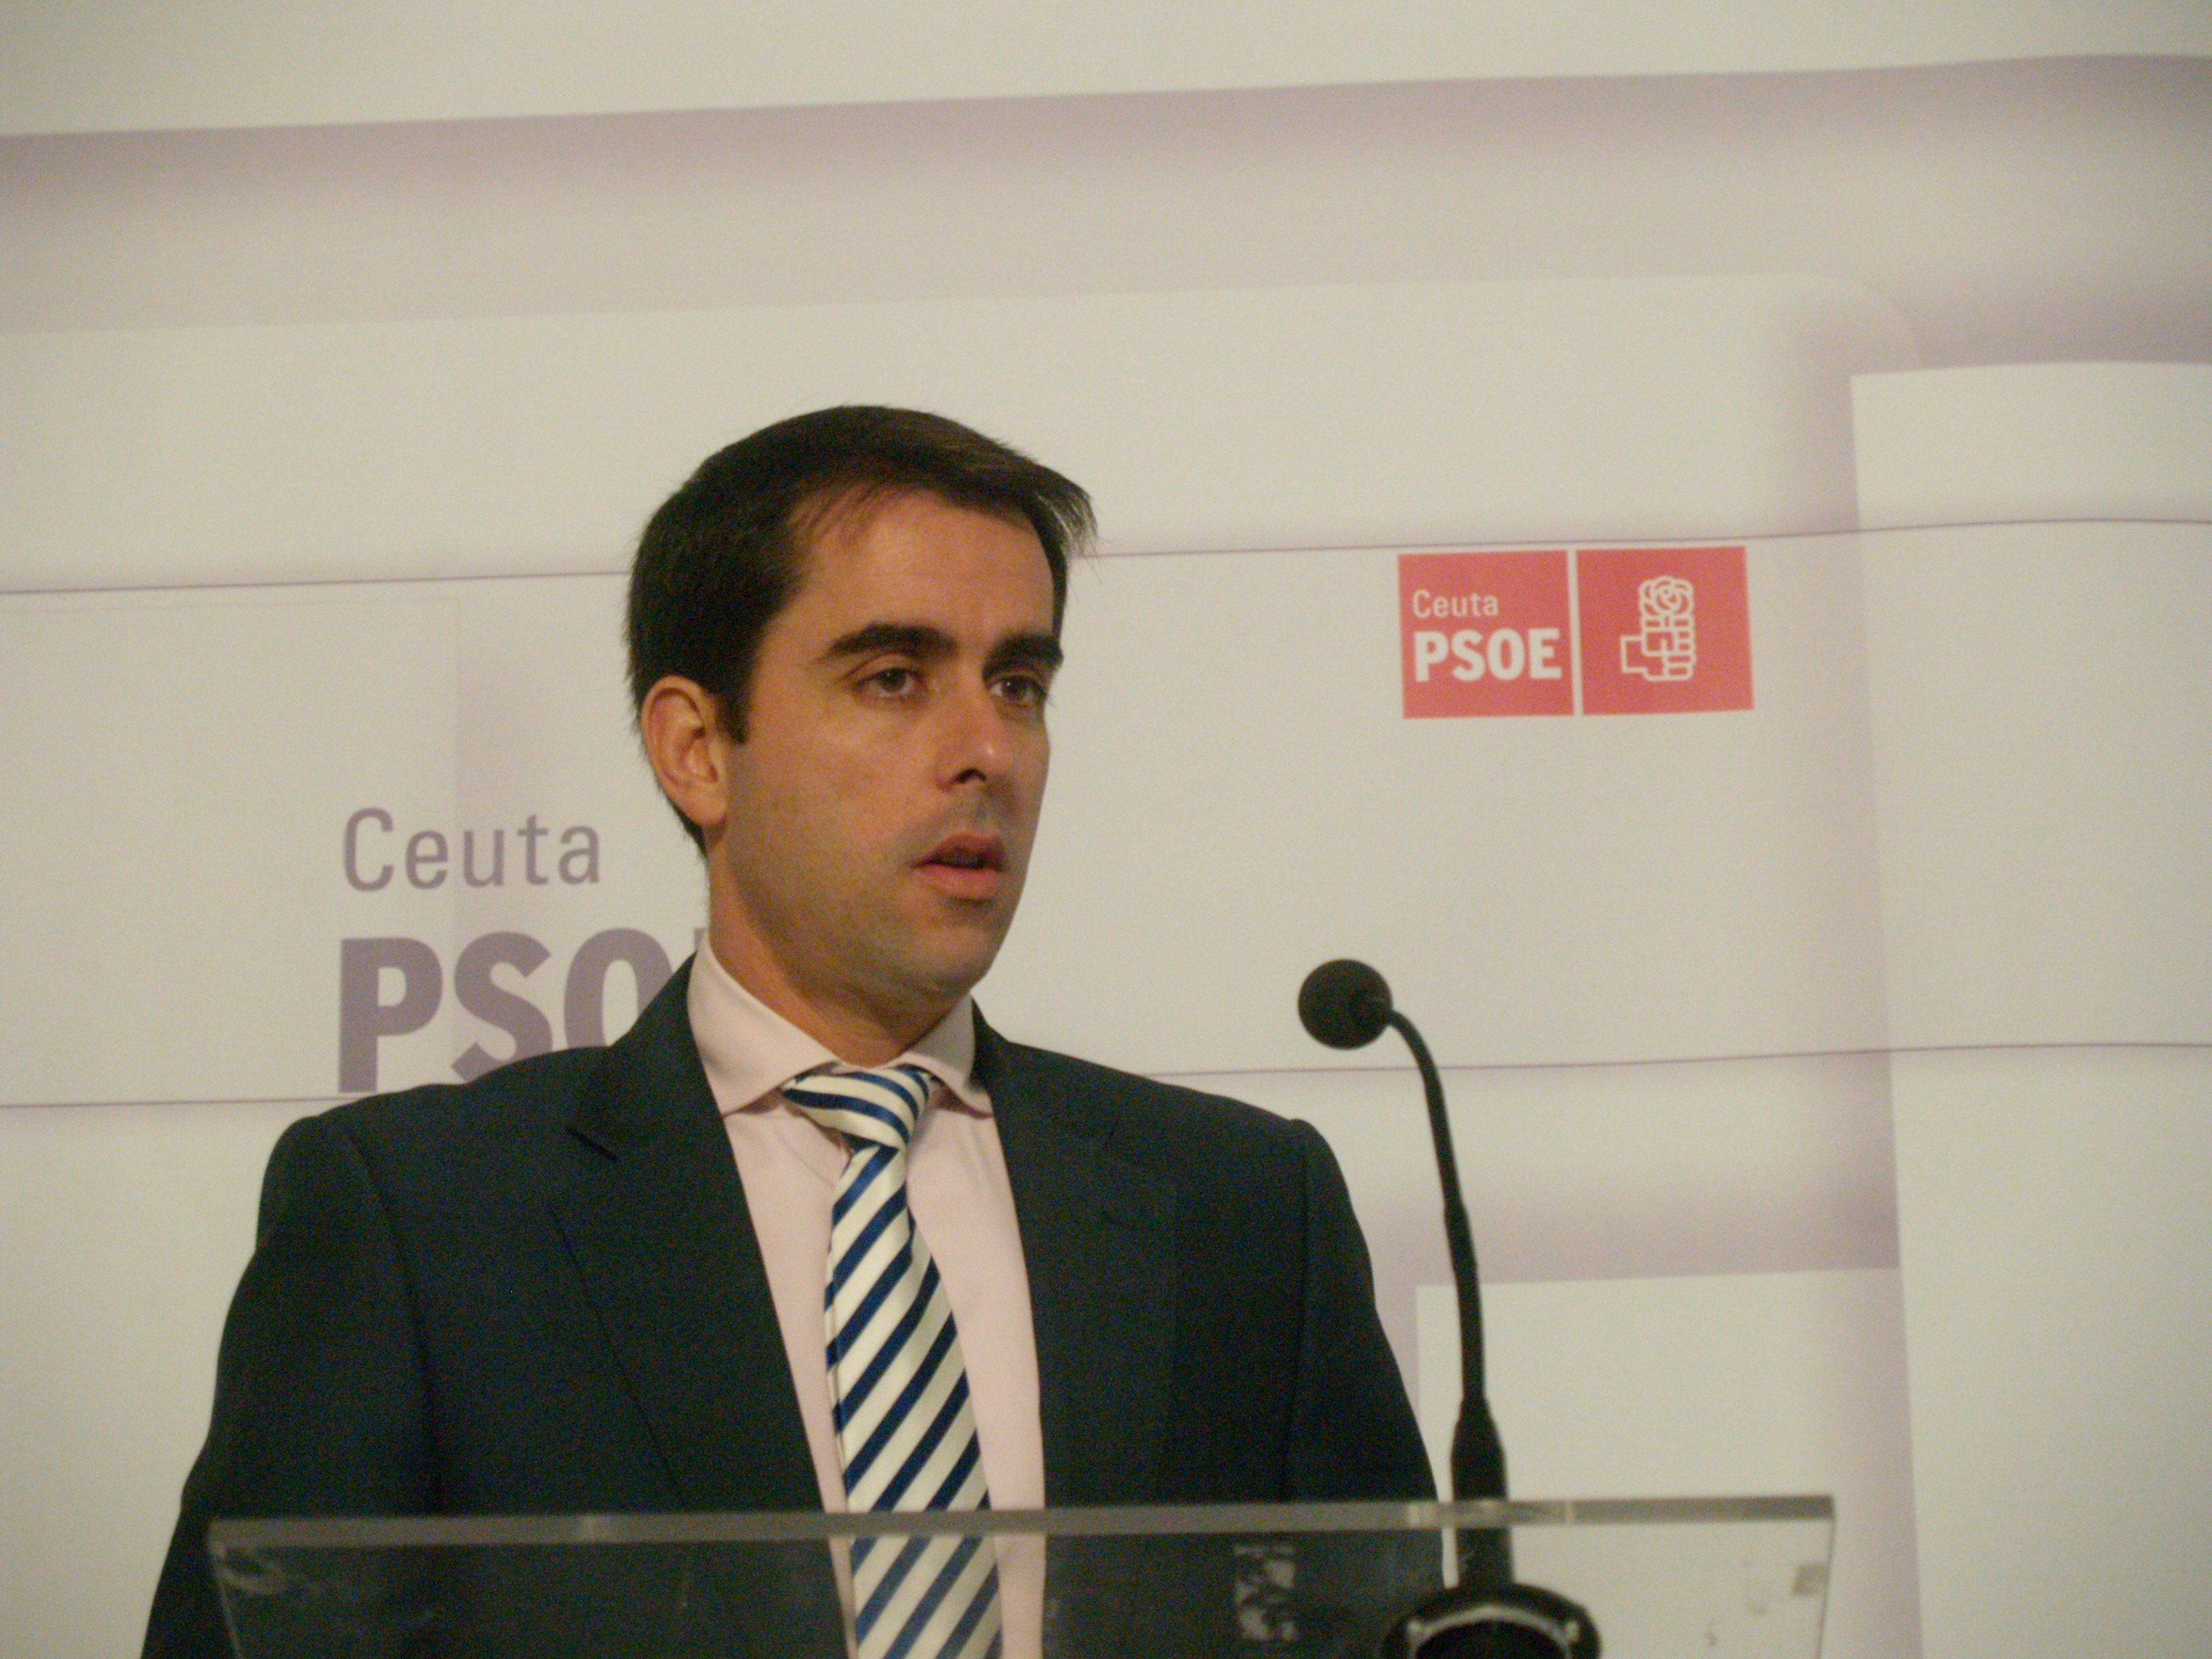 El PSOE espera que la «presión» sobre el »bunkering» no perjudique a Ceuta, que lleva años haciéndolo